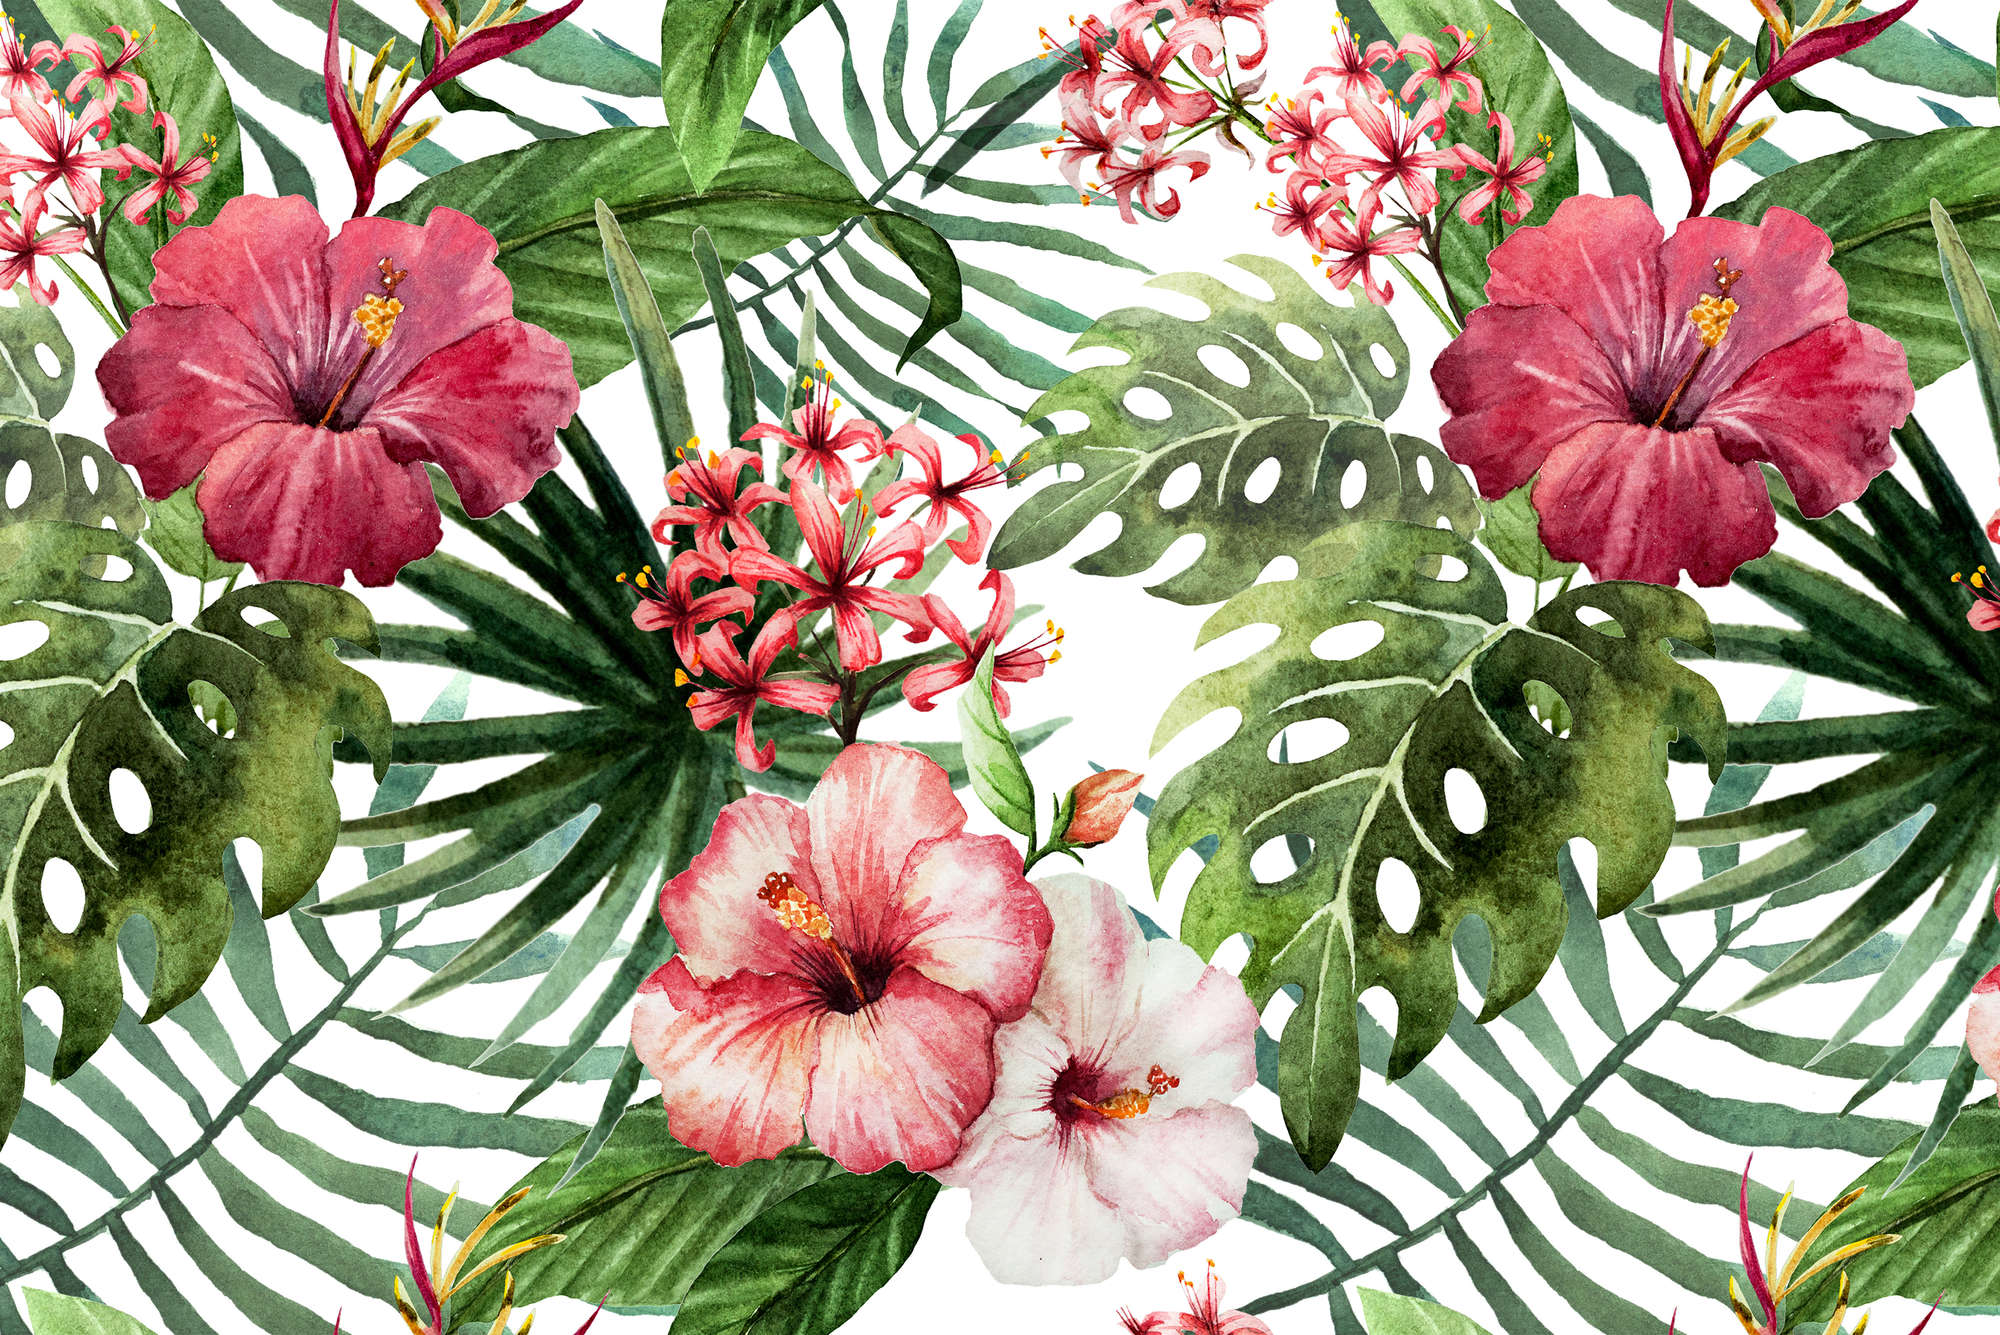             Grafik Fototapete Dschungel Blumen auf Matt Glattvlies
        